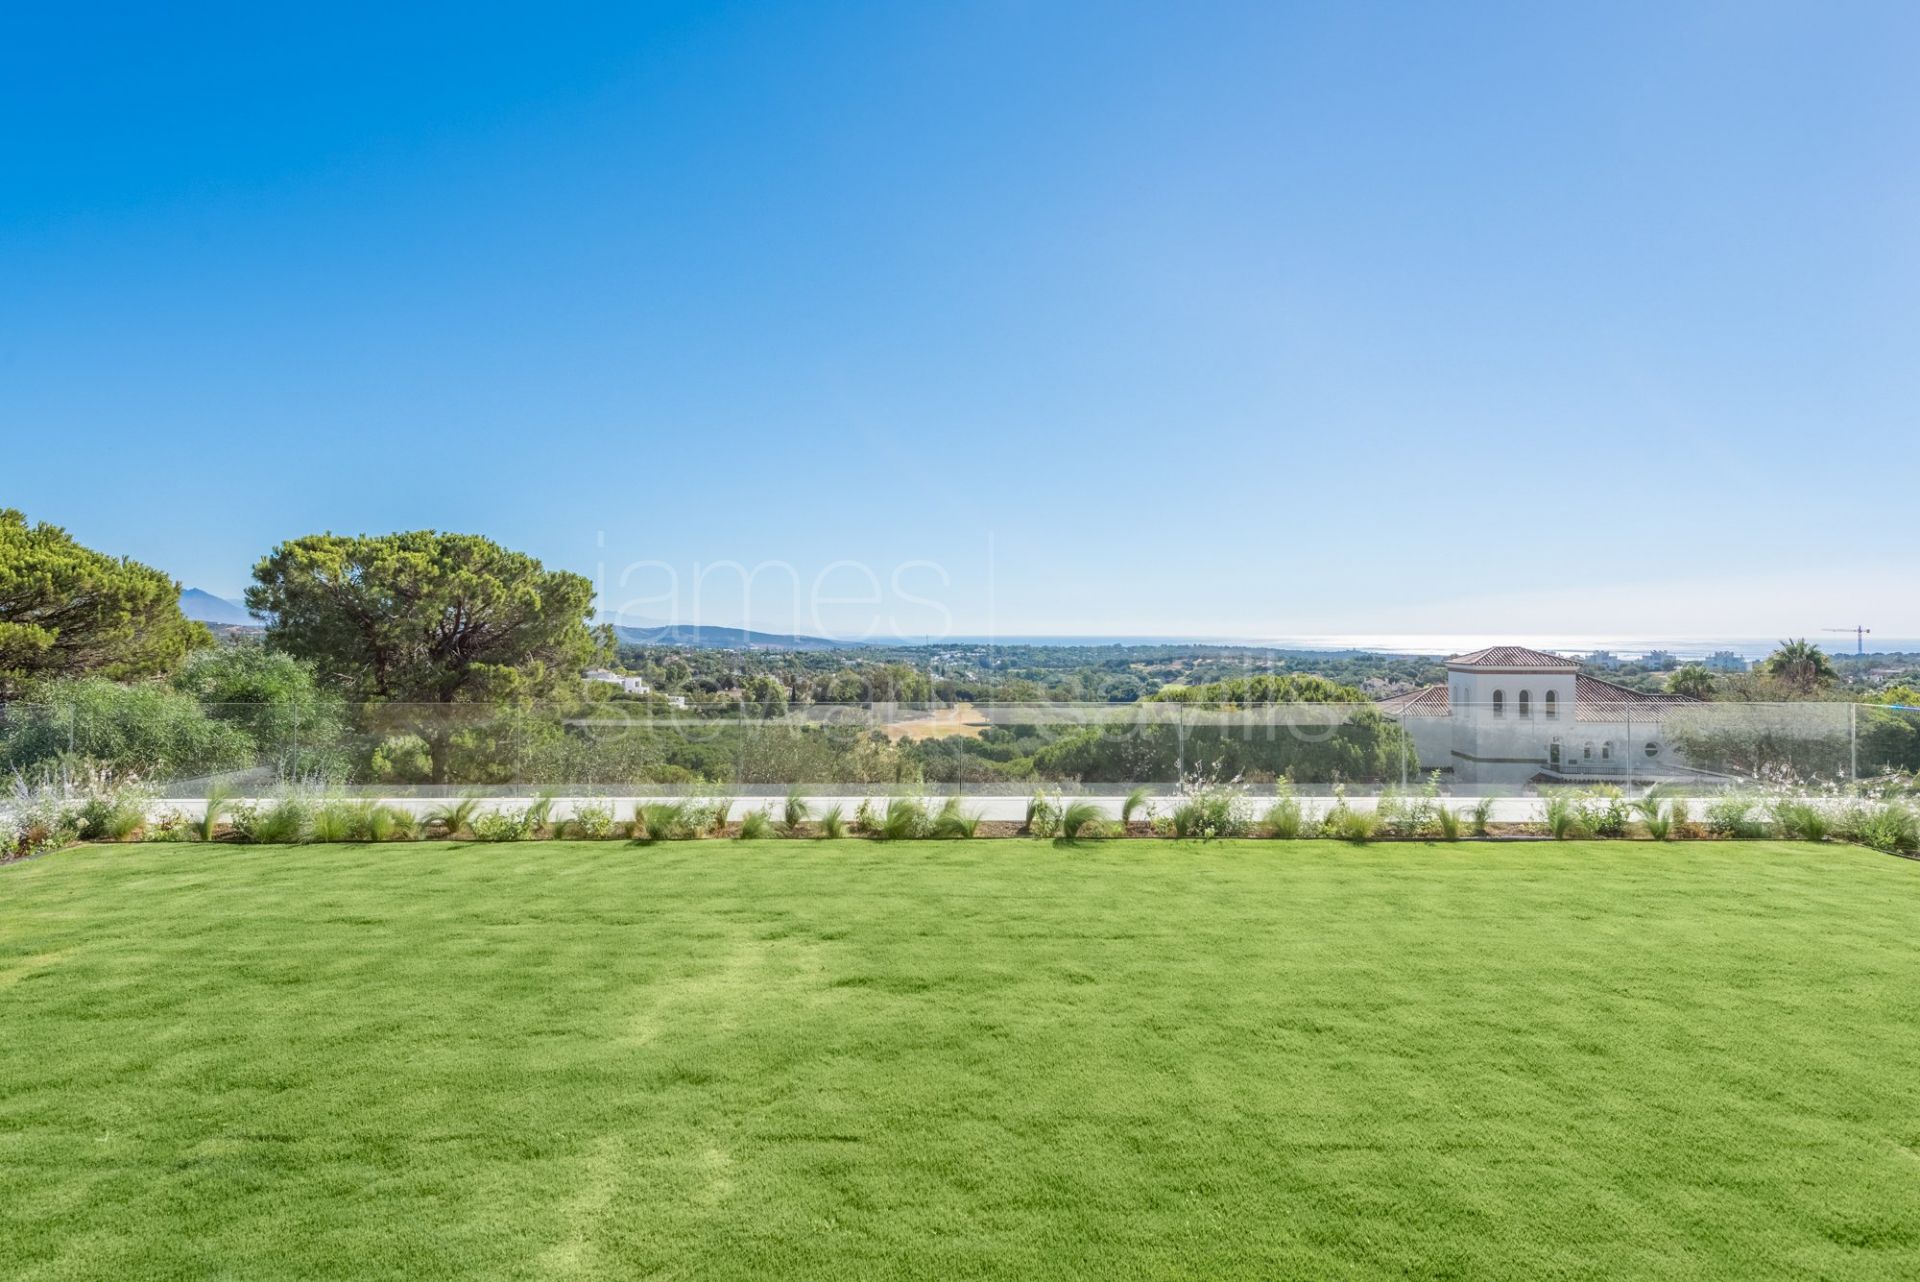 LAS ALAMANDAS - Superb Villa in the Almenara area of Sotogrande Alto with beautiful golf and sea views